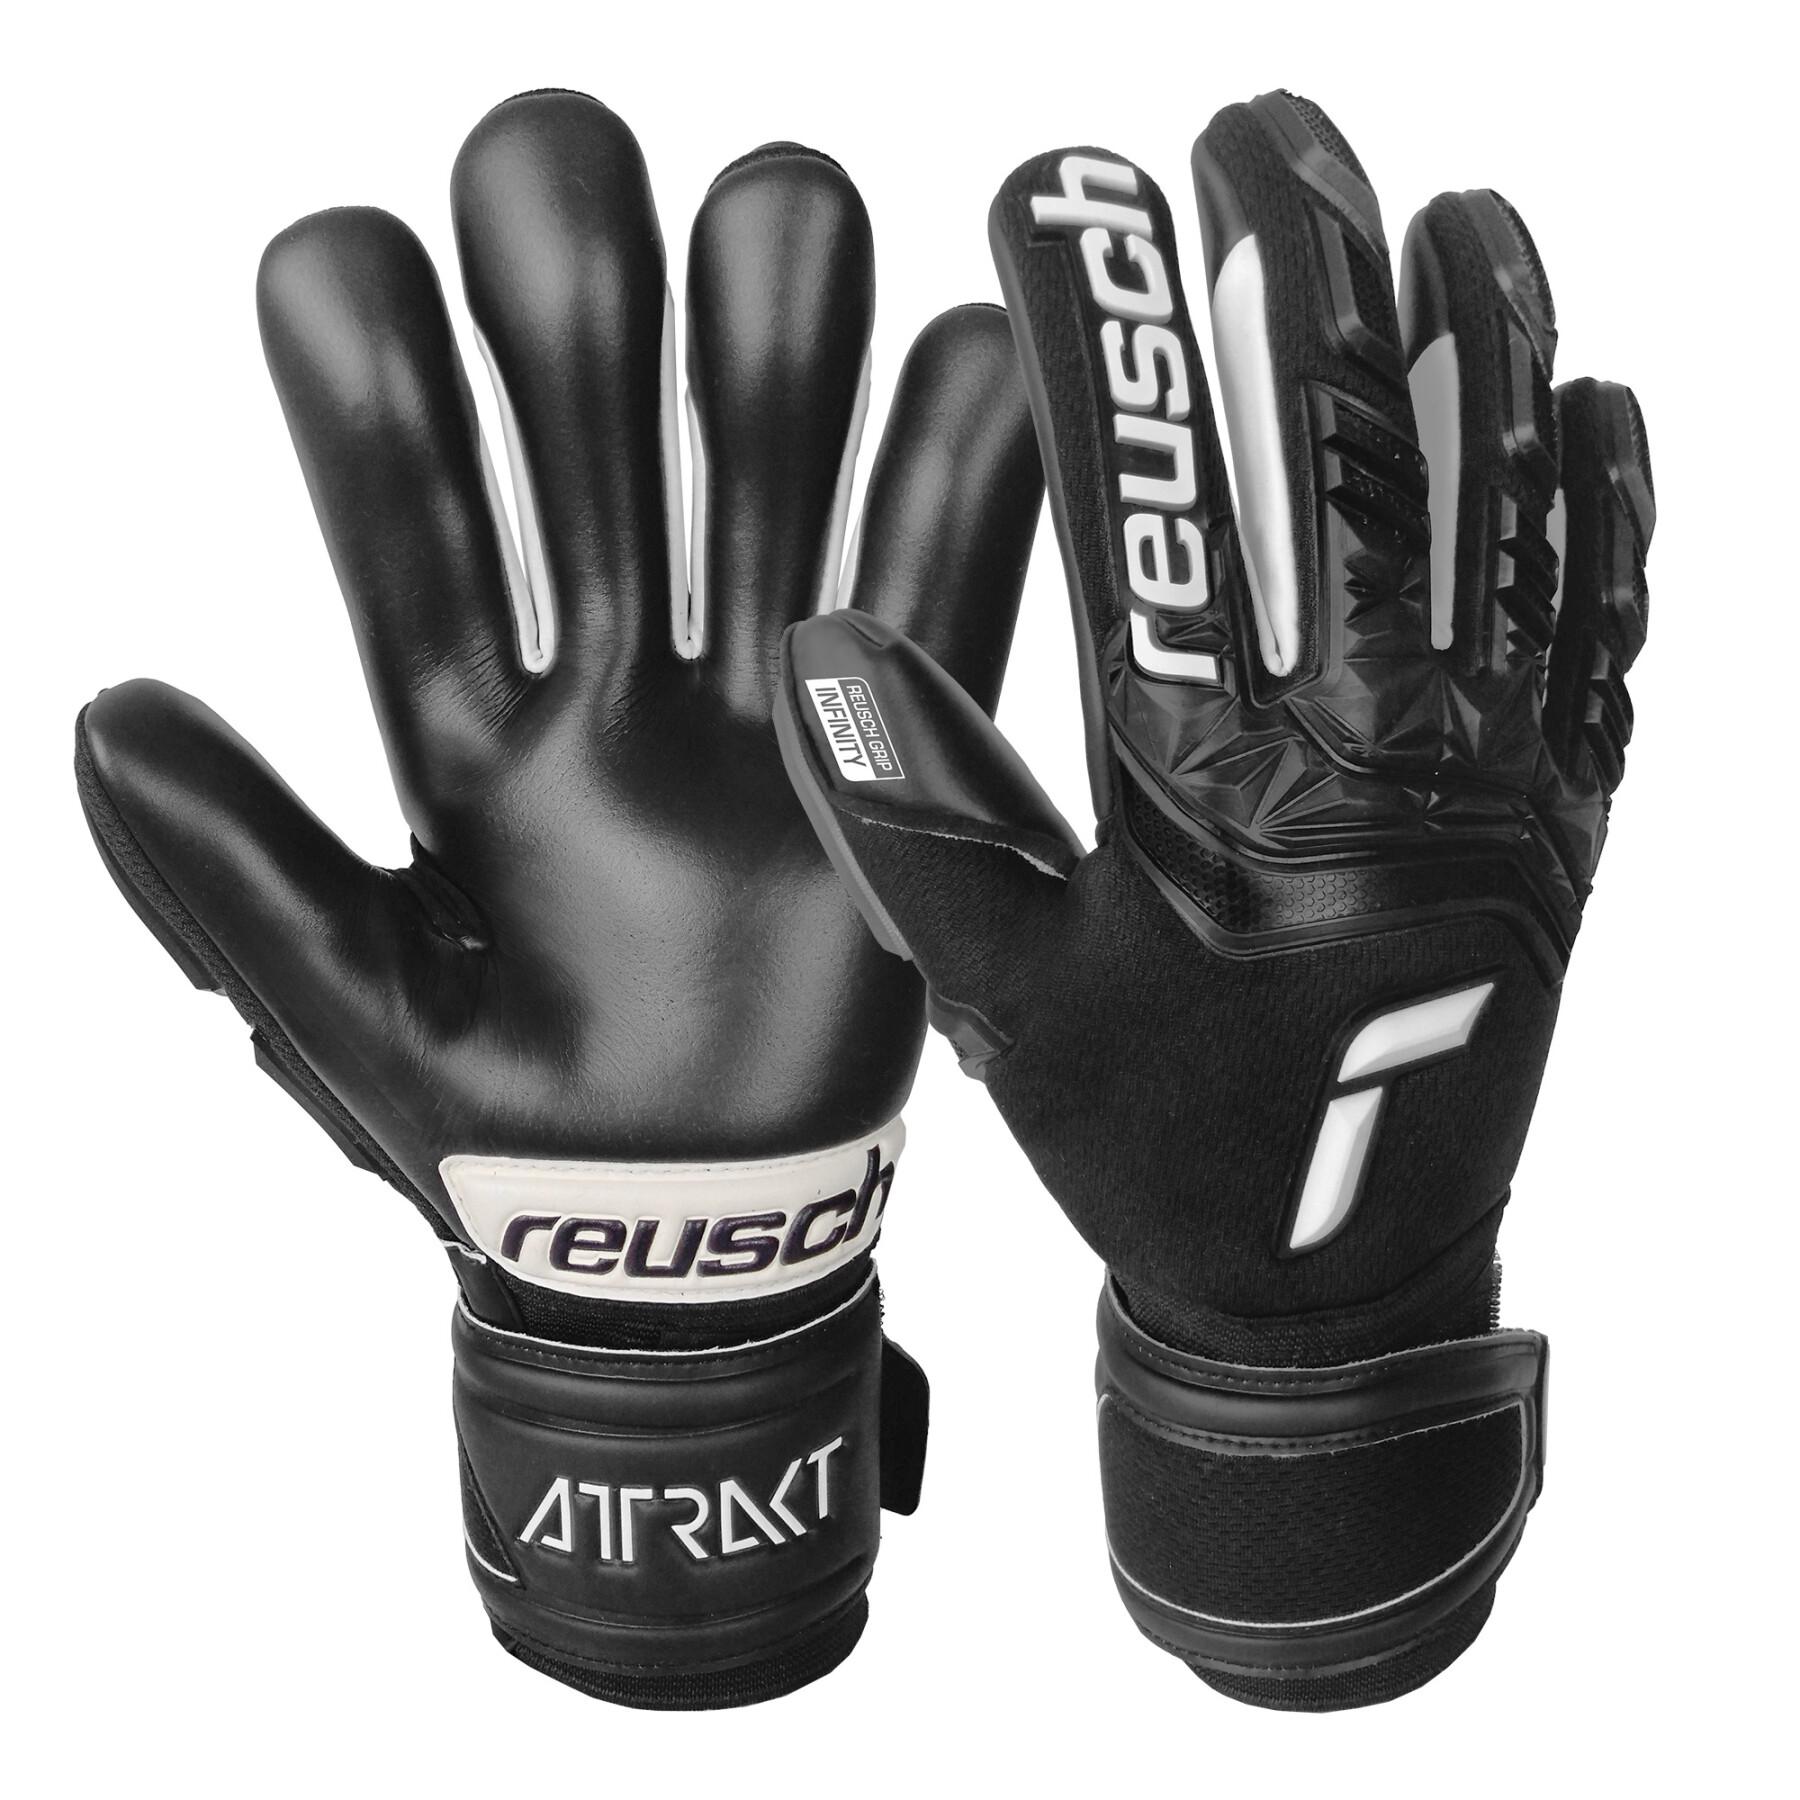 Goalkeeper gloves Reusch Attrakt Freegel Infinity